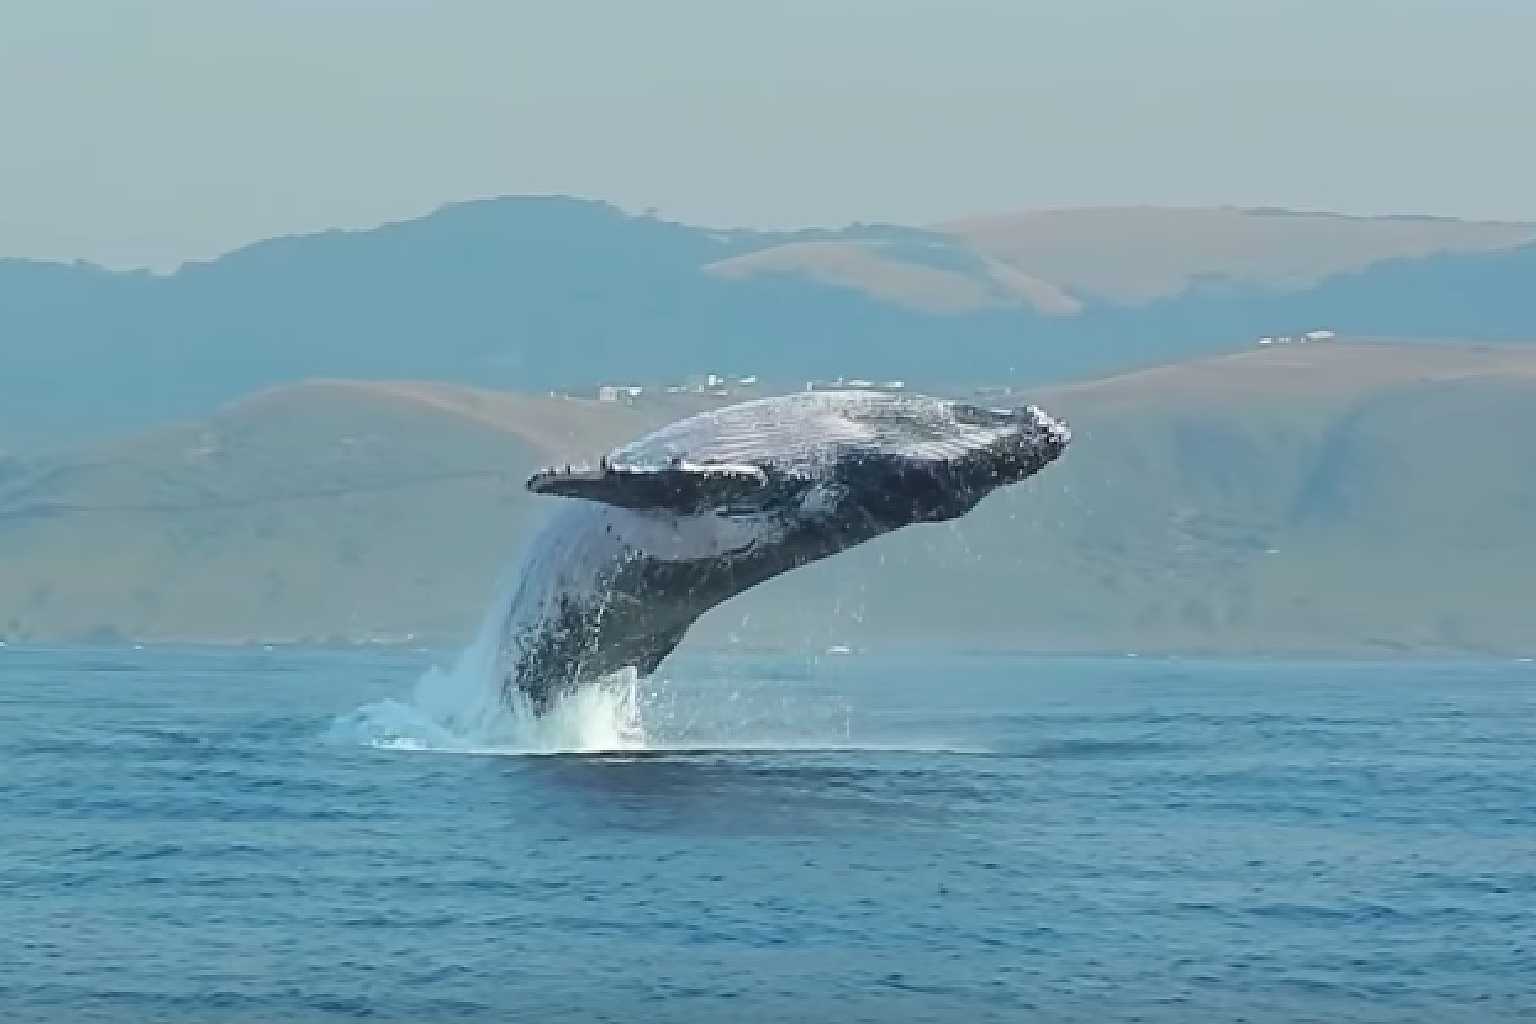 40 噸座頭鯨 躍出水面畫面極罕見專家爽喊這是第一次 爆笑博客